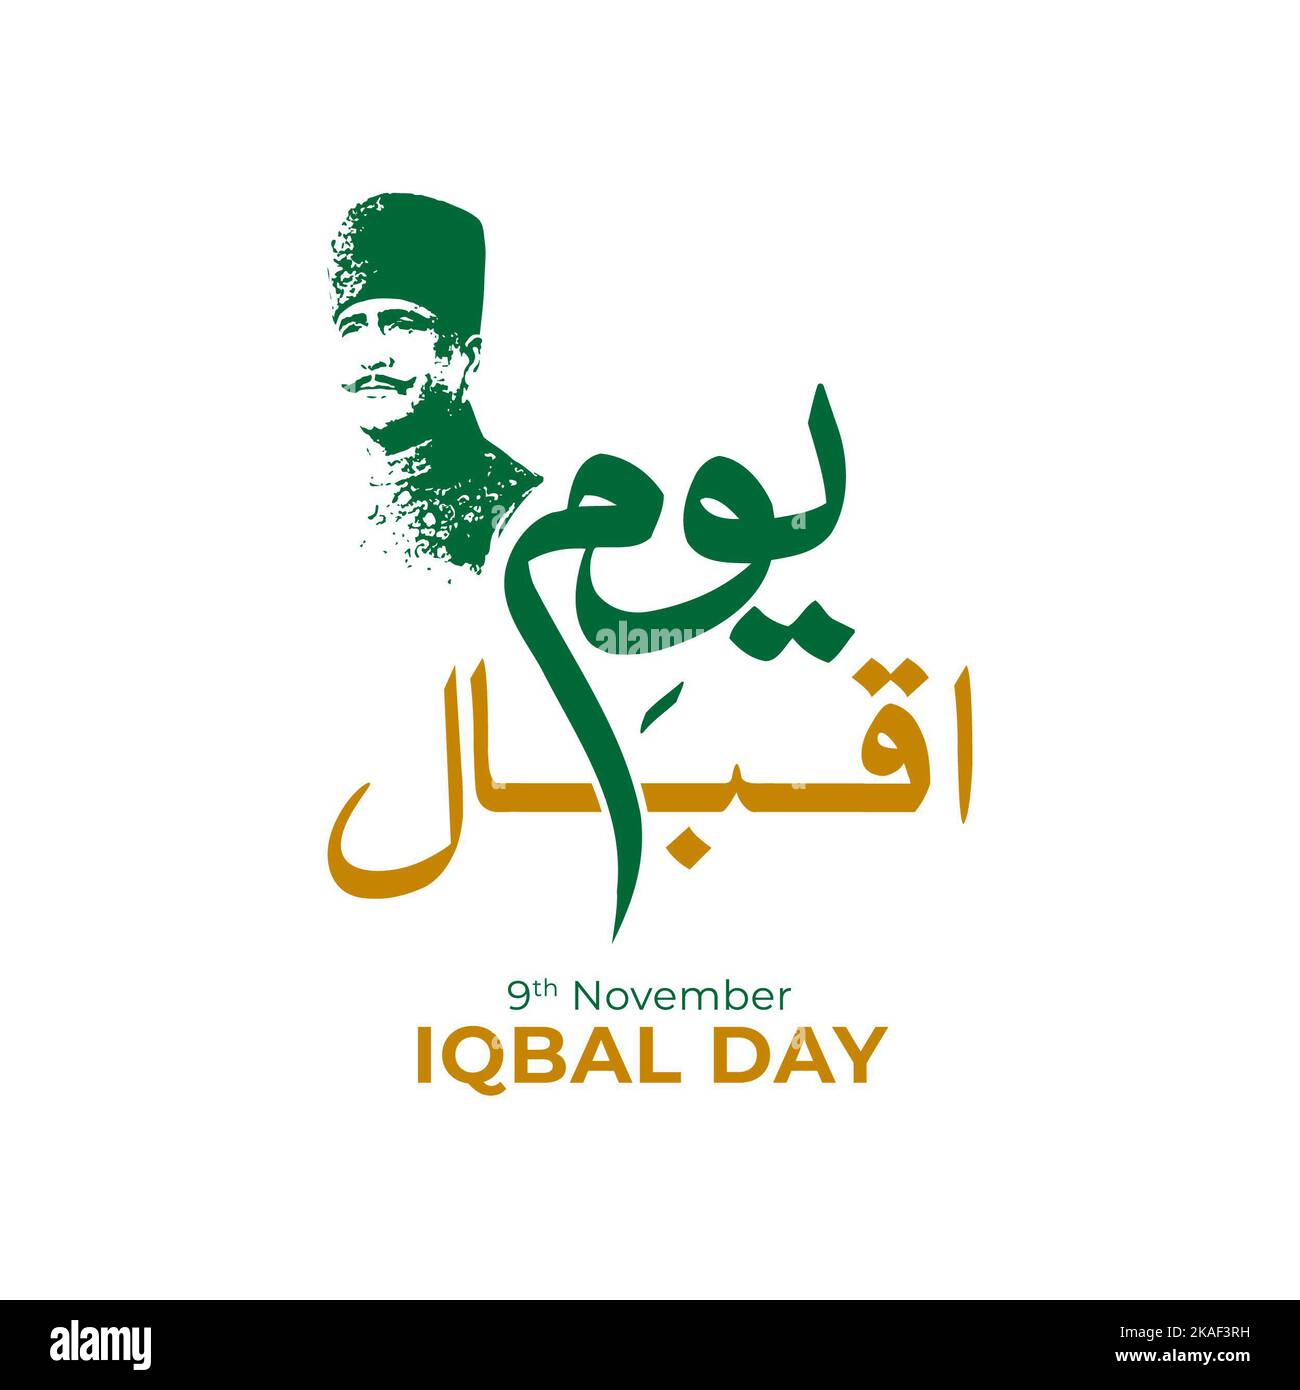 Allama Muhammad Iqbal 9th novembre - poète national du Pakistan - Citation d'iqbal en anglais. Illustration vectorielle Banque D'Images